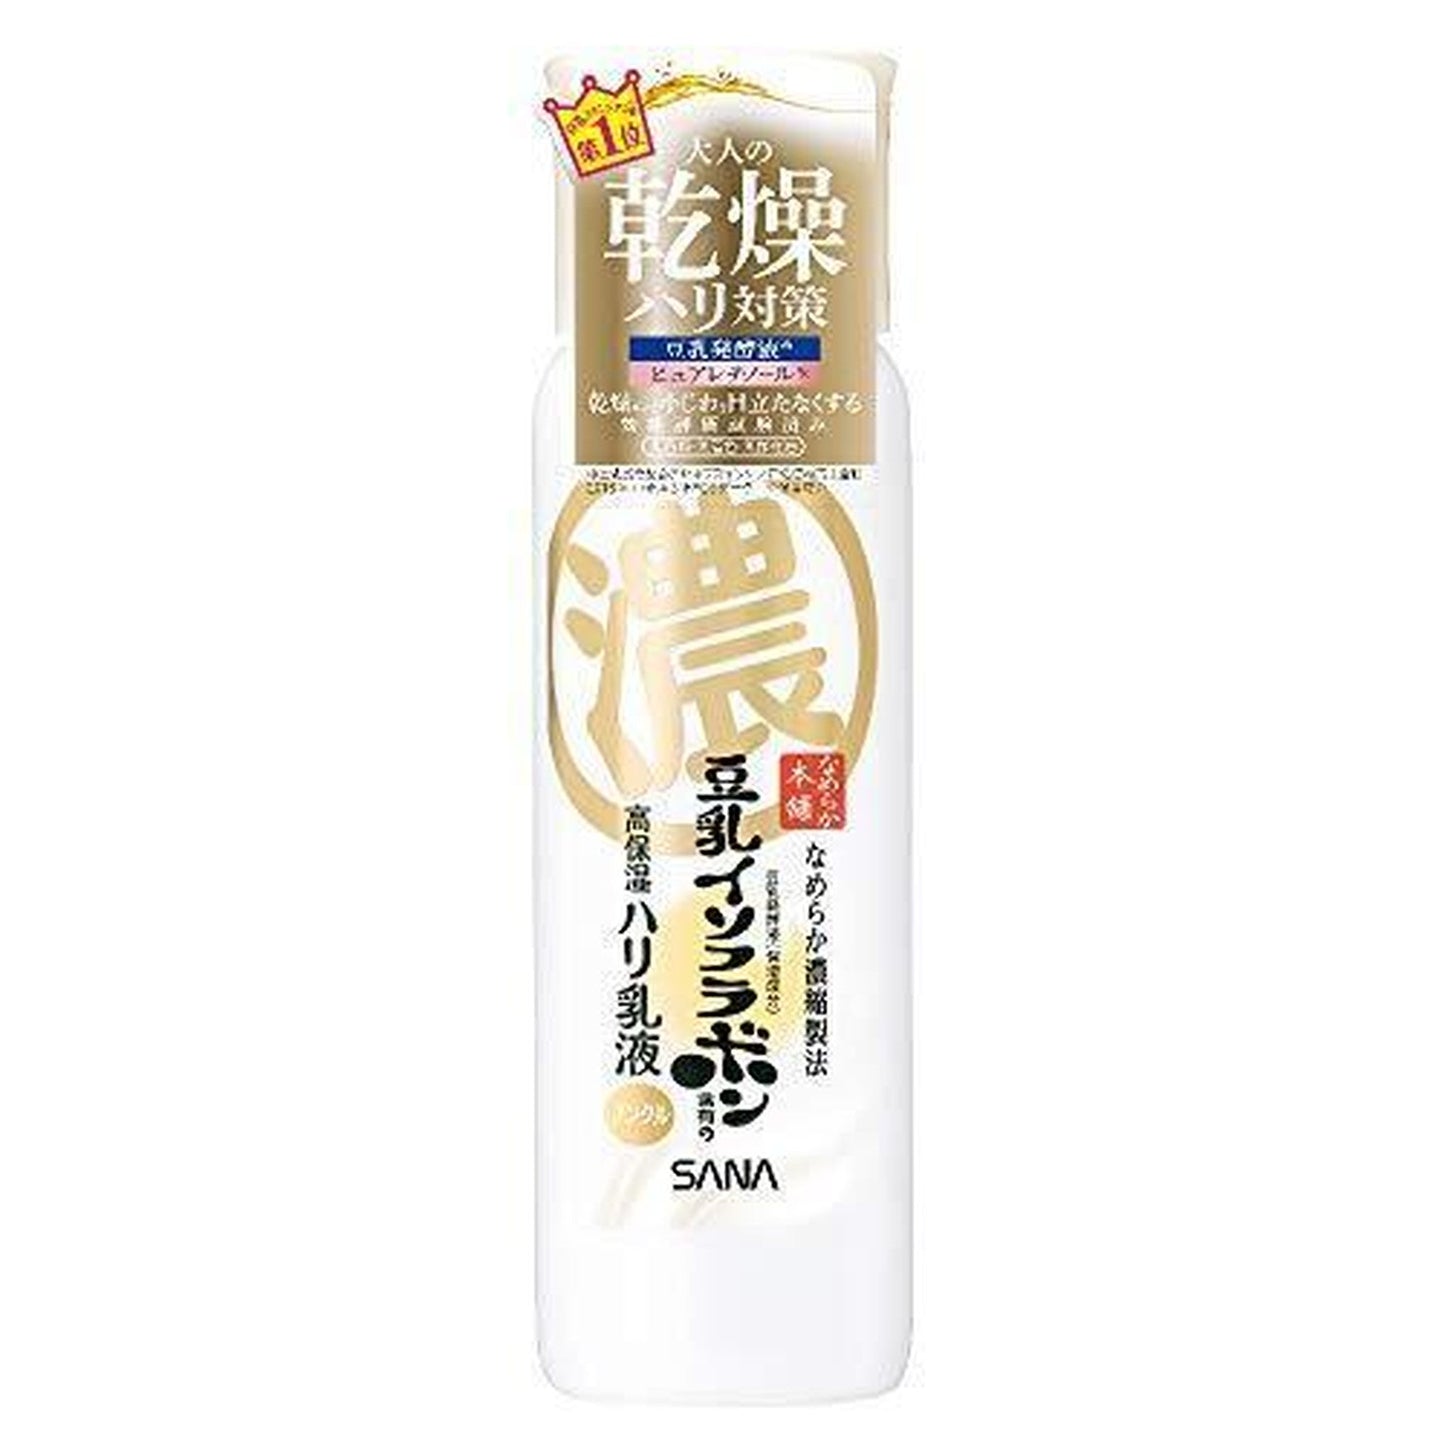 Sana Nameraka Honpo Wrinkle Emulsion N 150mL